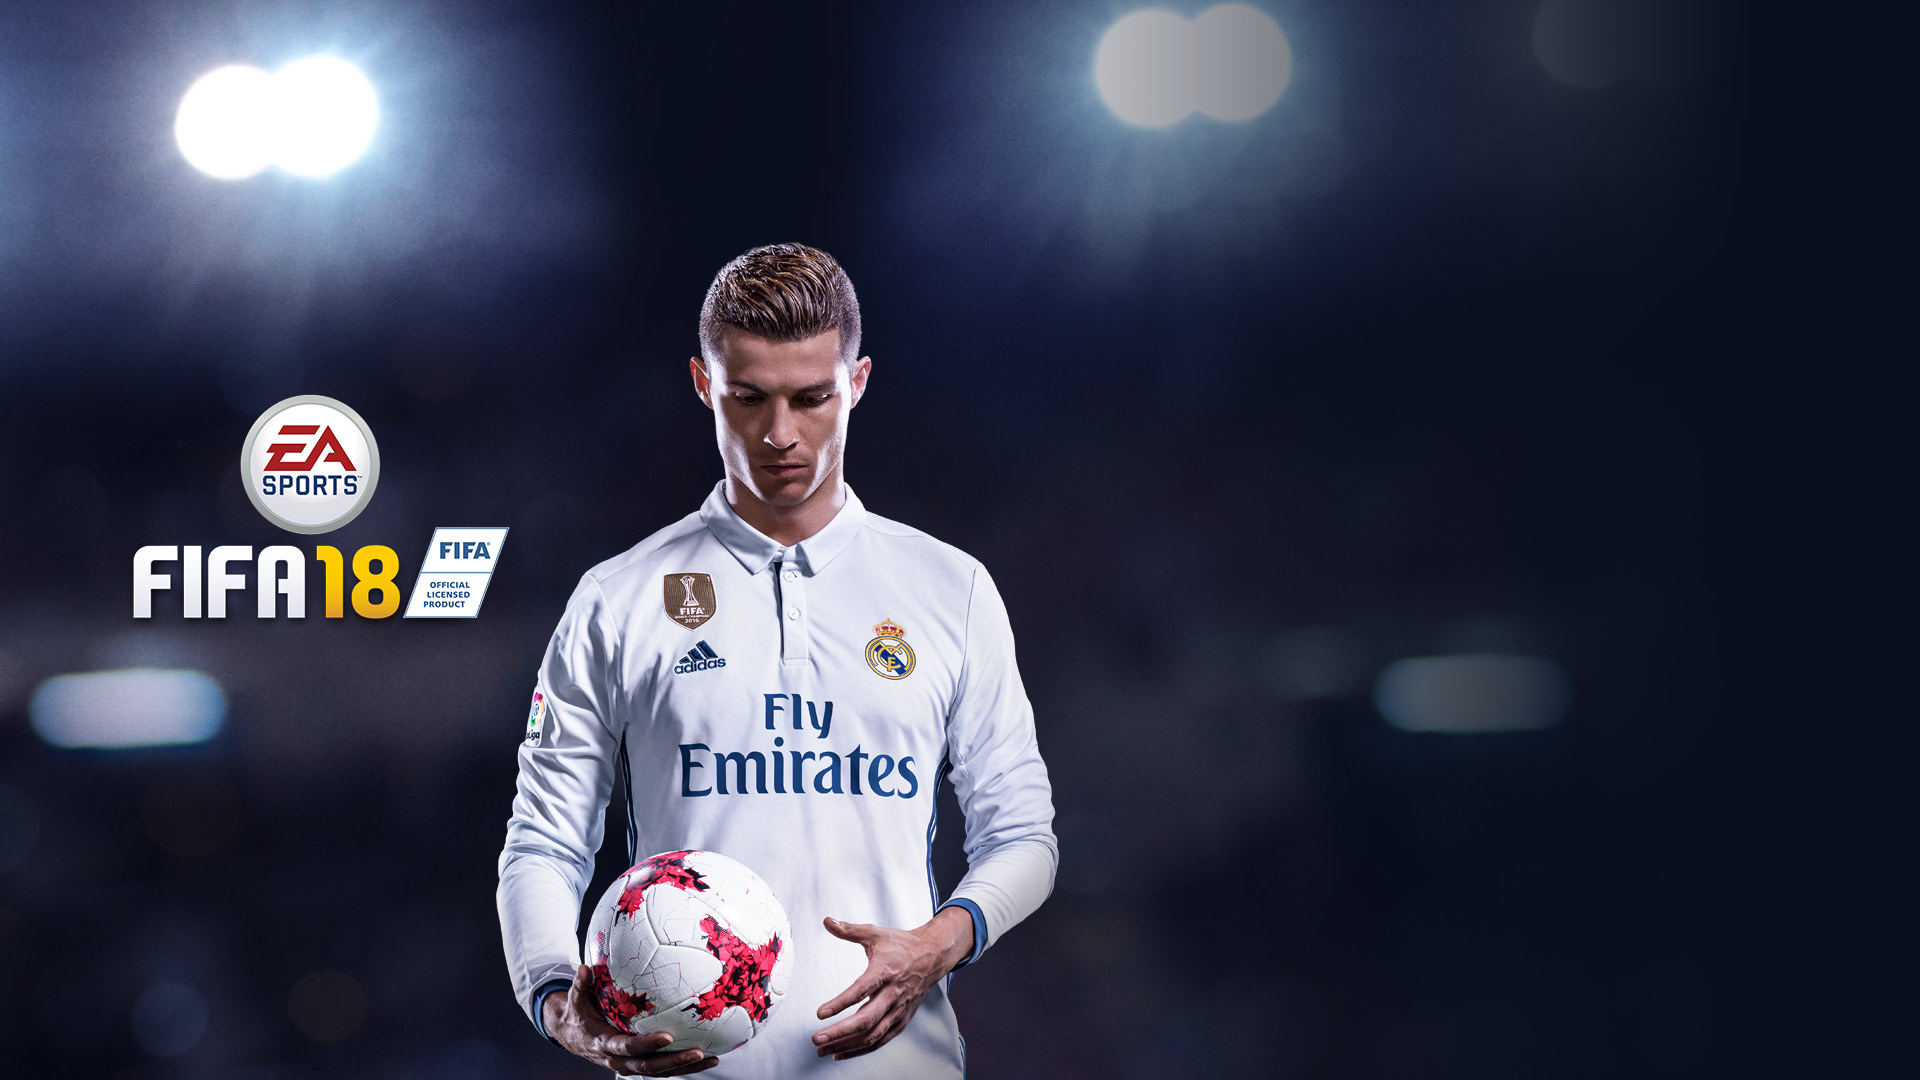 FIFA 18 sigue lider de ventas en Reino Unido